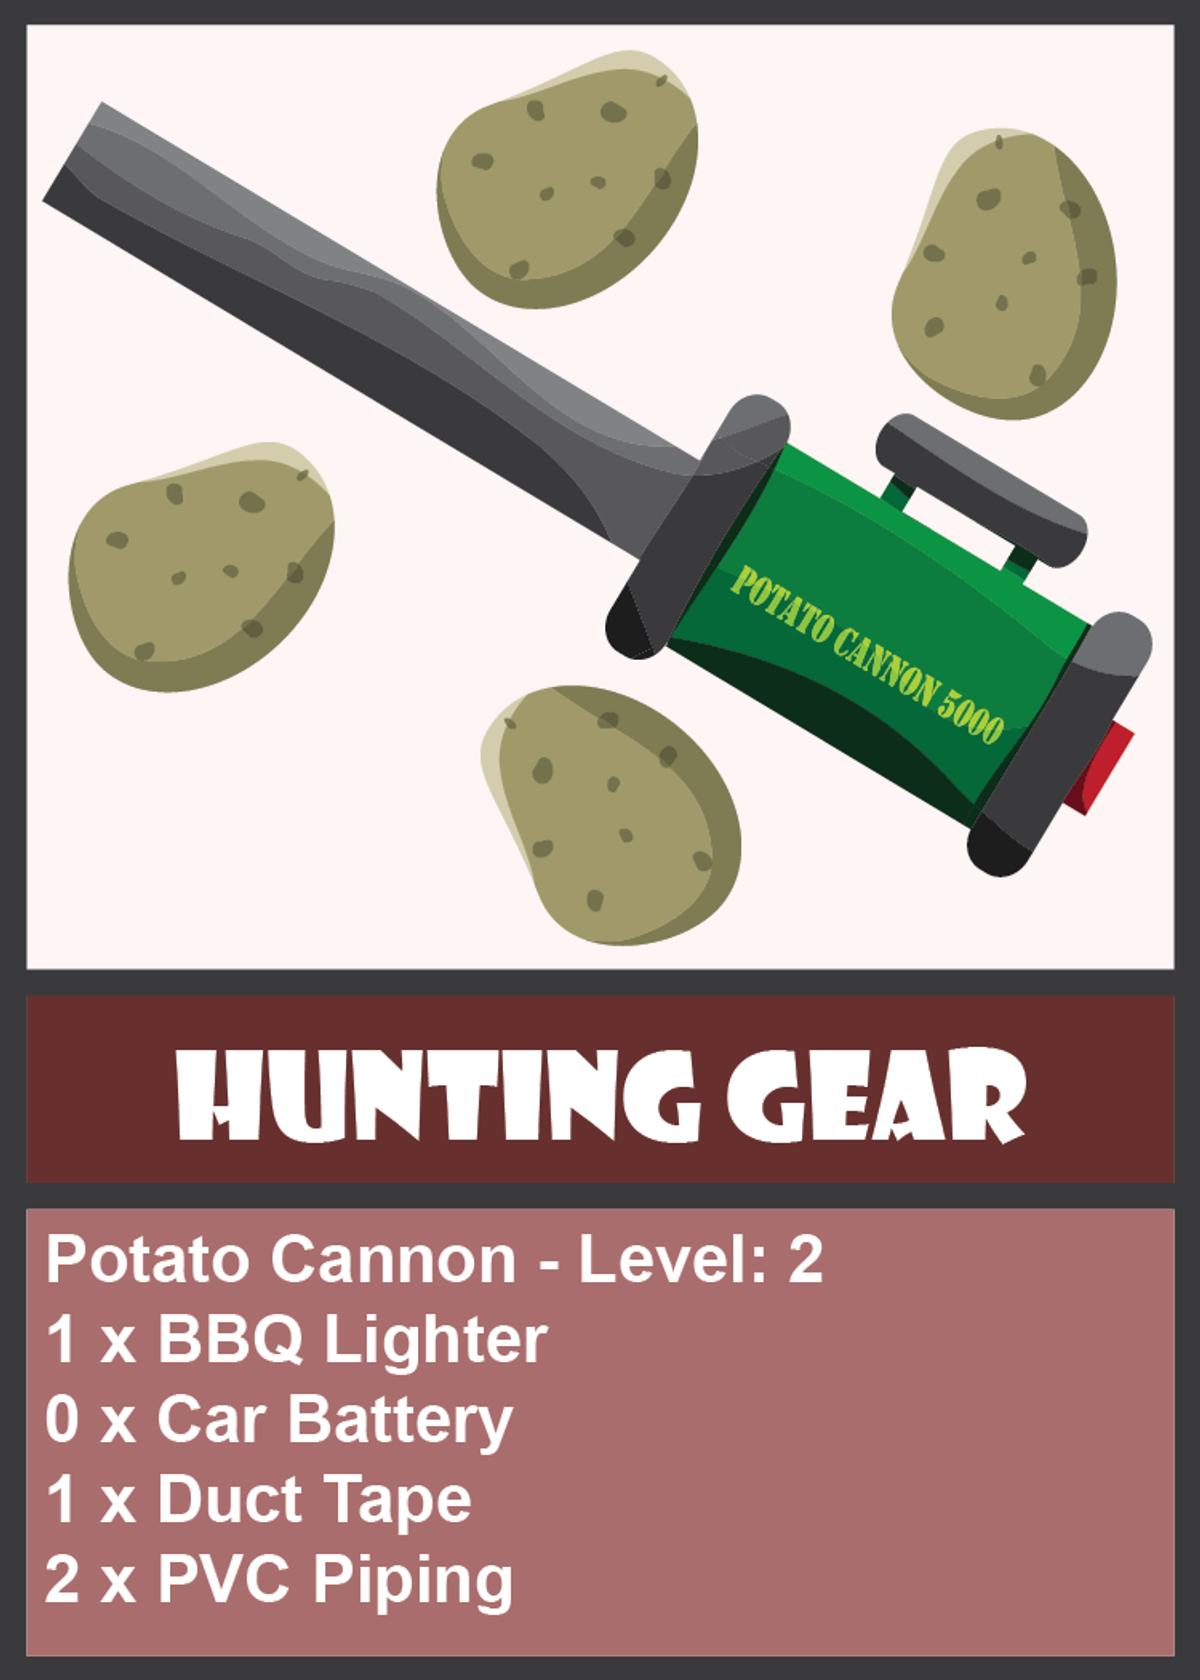 Potato Cannon